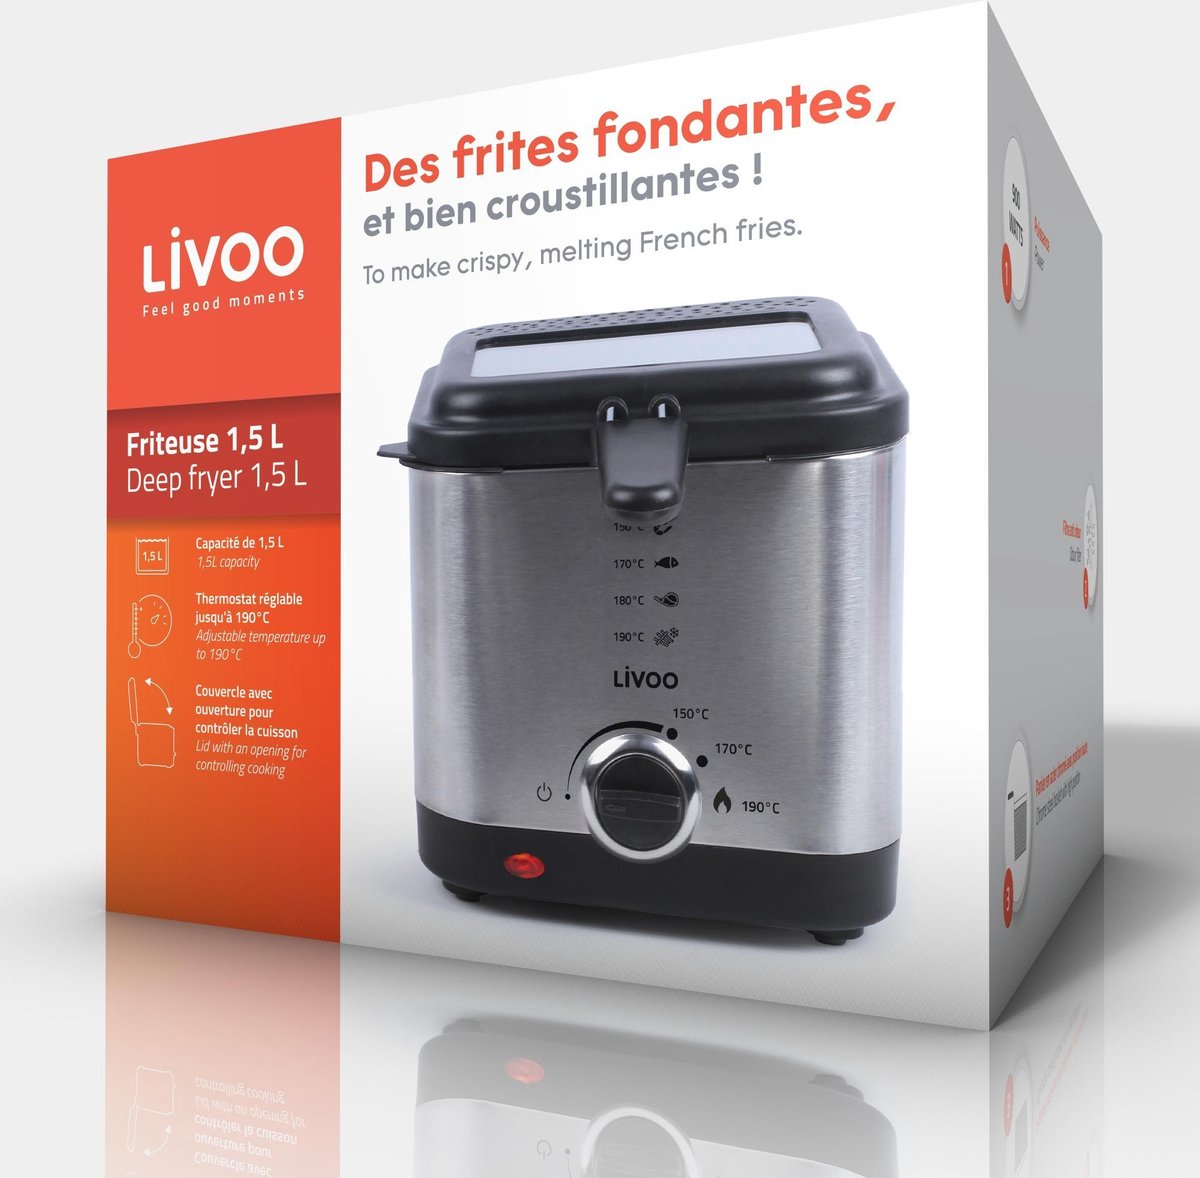 Livoo - Friteuse électrique DOC240 - 1,5 litre | bol.com